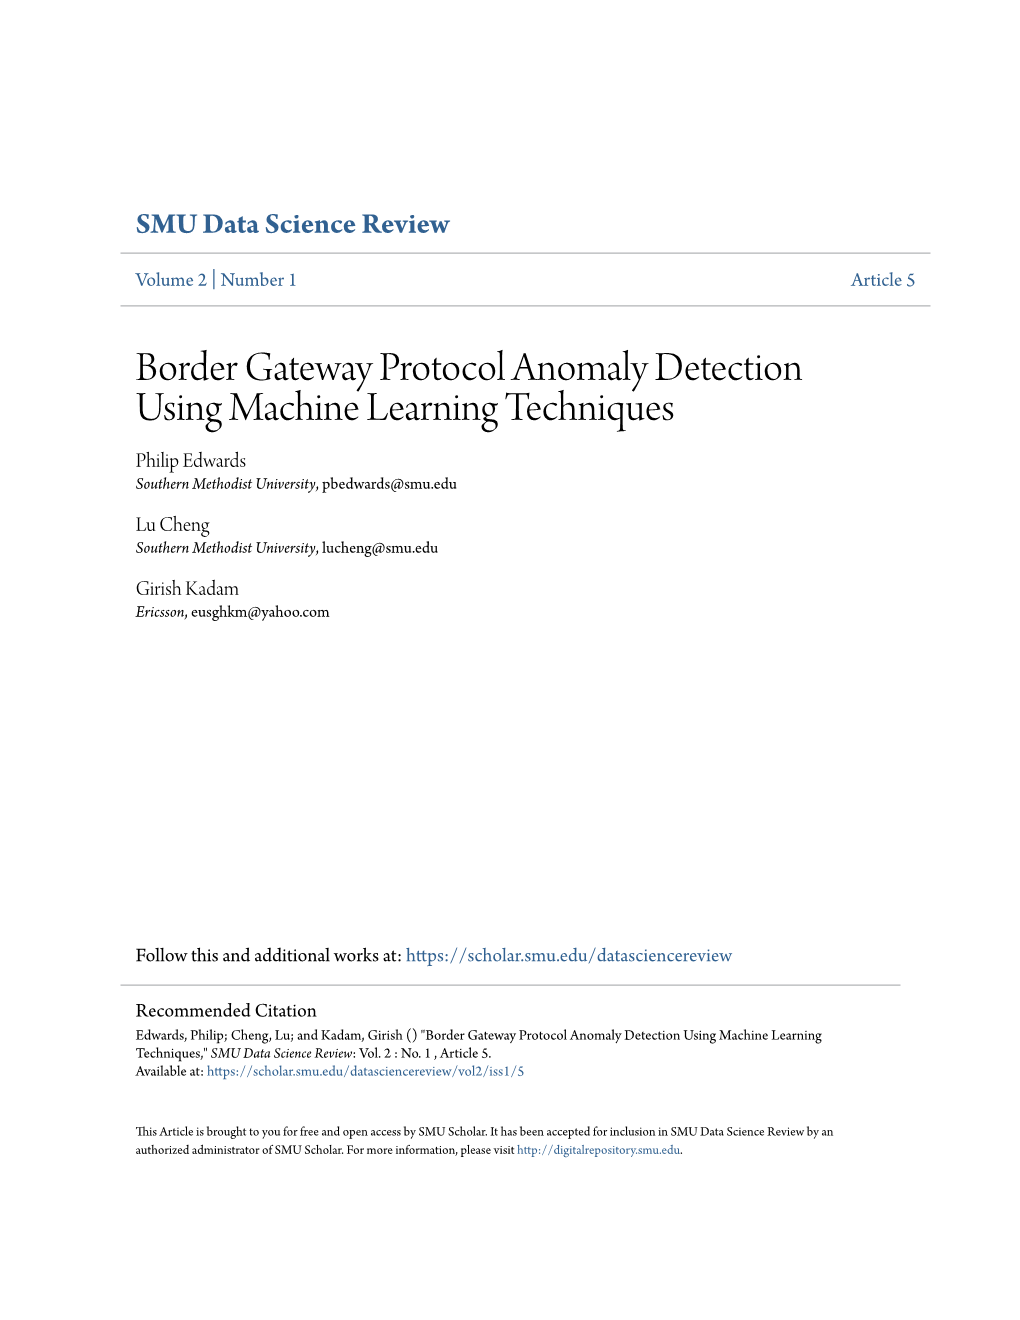 Border Gateway Protocol Anomaly Detection Using Machine Learning Techniques Philip Edwards Southern Methodist University, Pbedwards@Smu.Edu